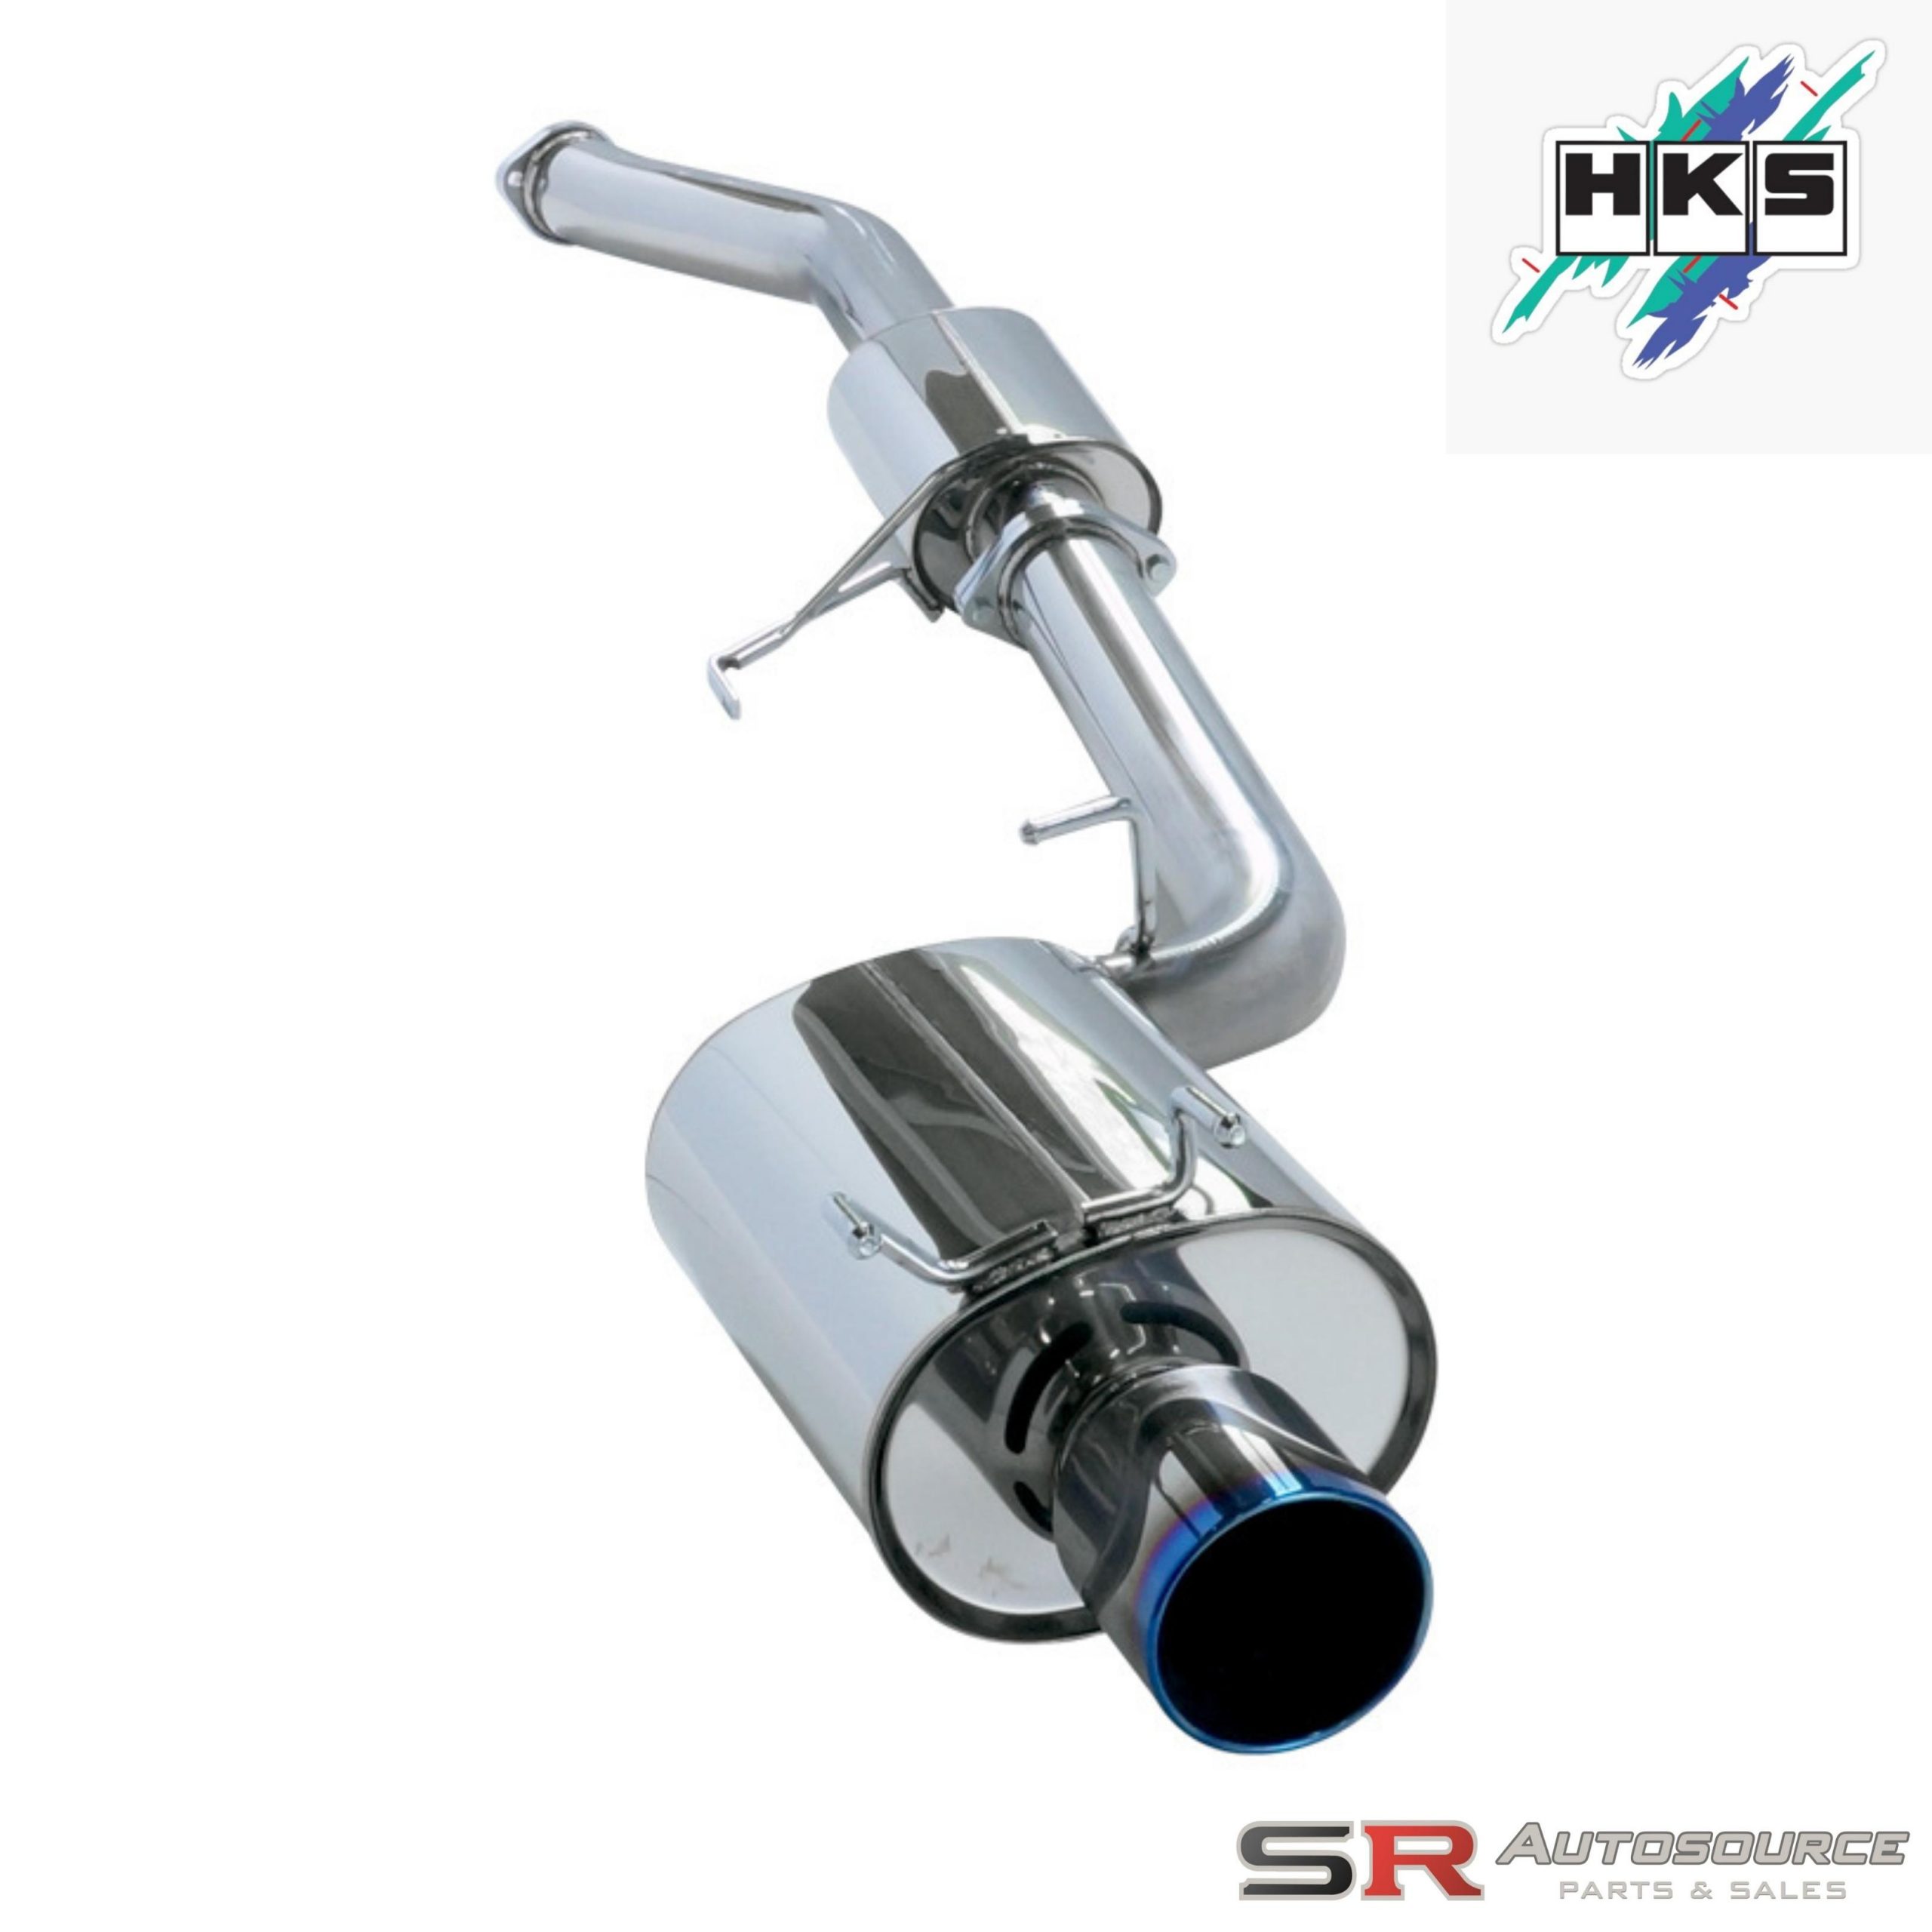 HKS Super Turbo Muffler Exhaust Stainless Exhaust System for R32 Skyline GTR BNR32